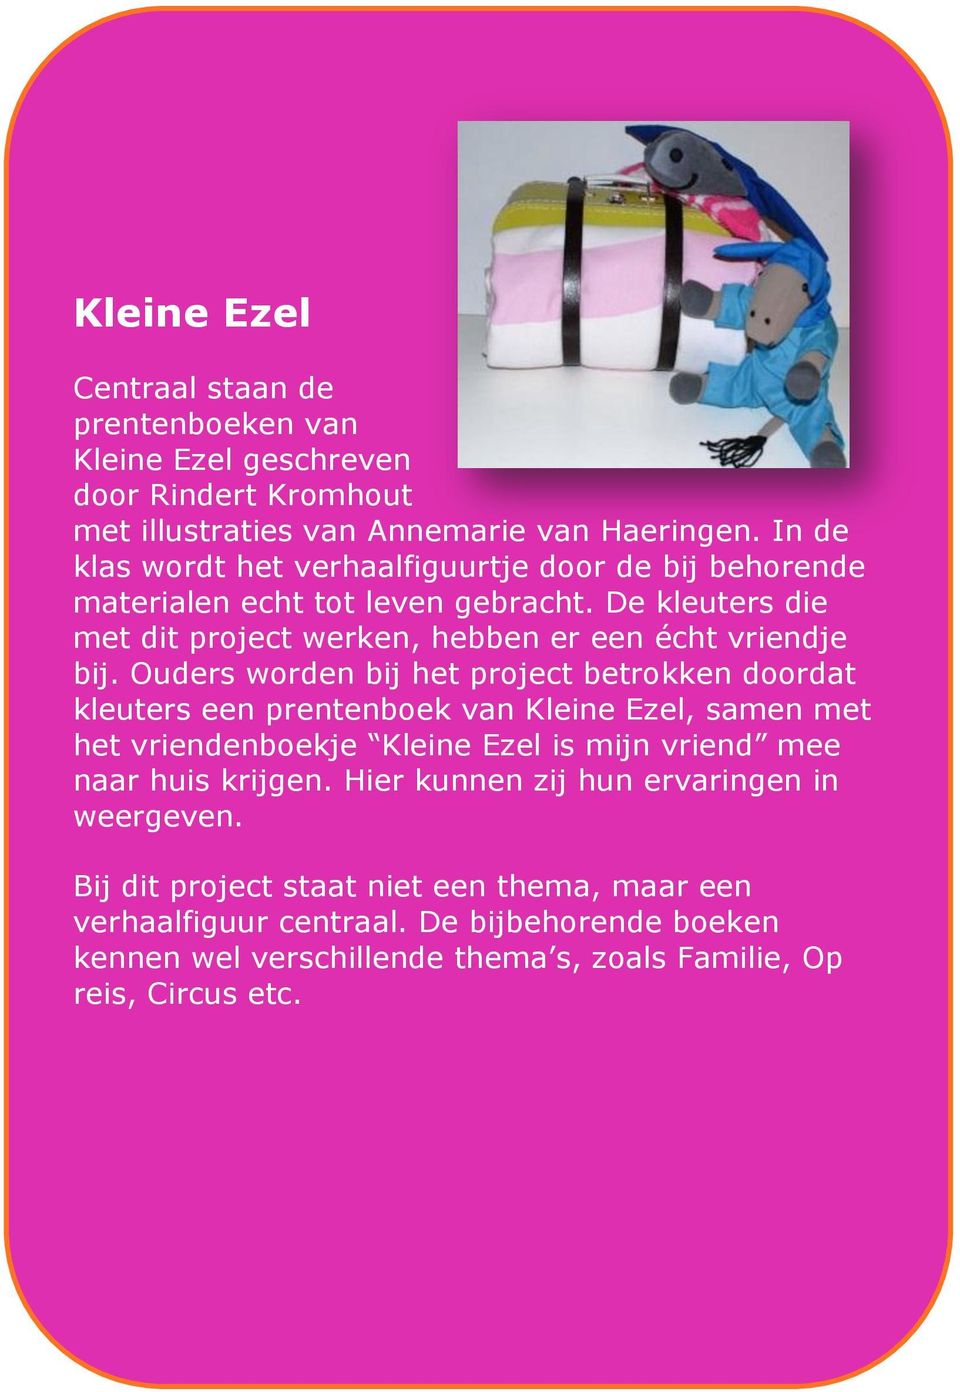 Ouders worden bij het project betrokken doordat kleuters een prentenboek van Kleine Ezel, samen met het vriendenboekje Kleine Ezel is mijn vriend mee naar huis krijgen.